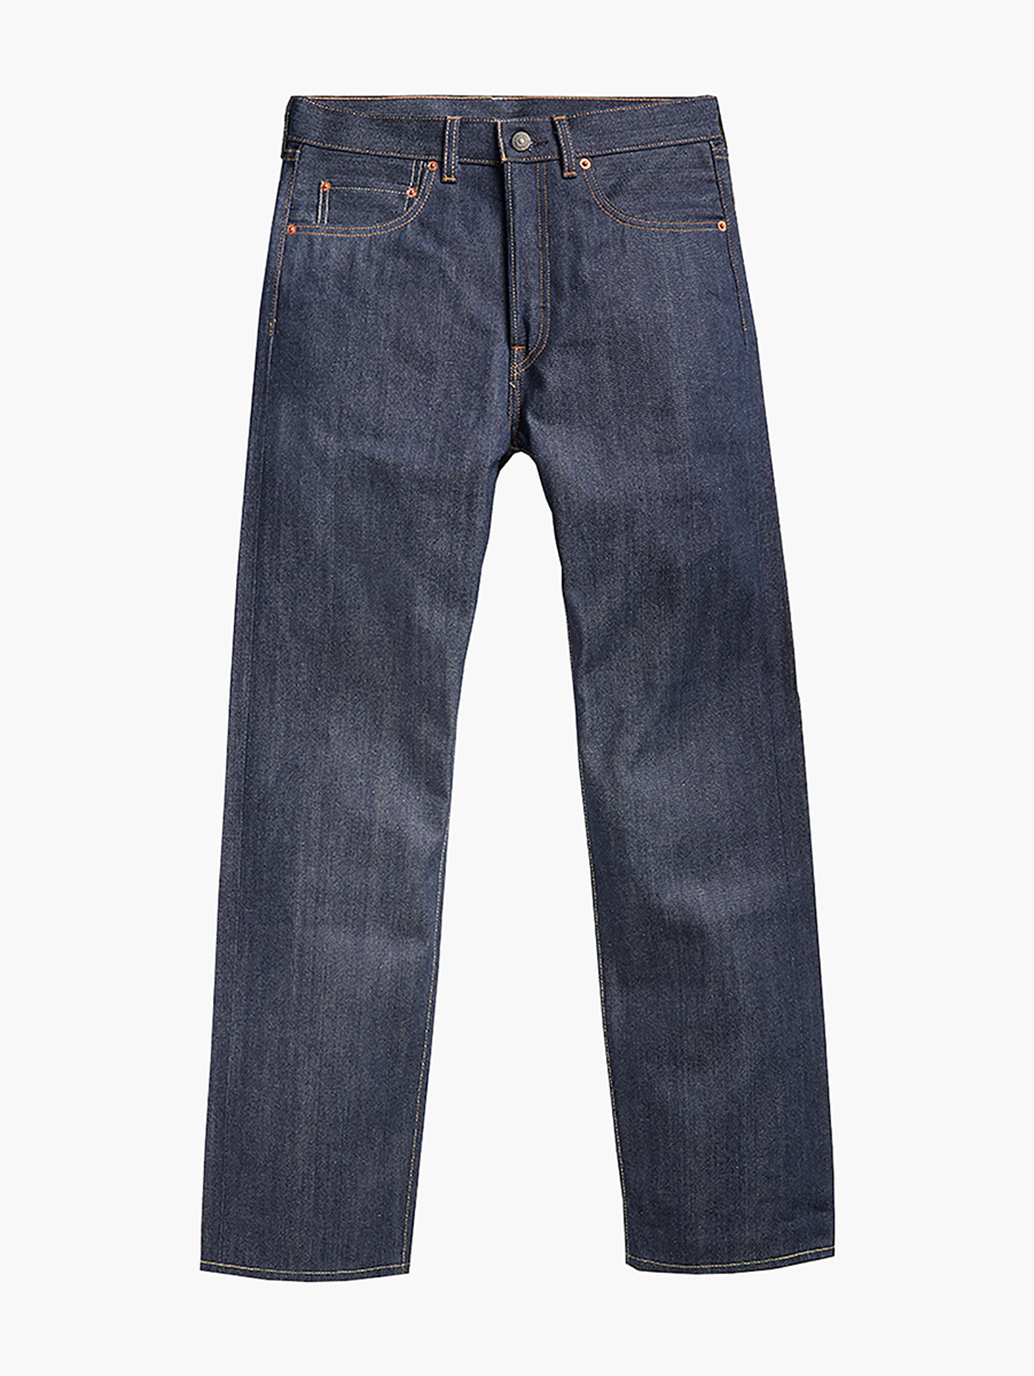 Levi's® Vintage Collection 1966 501® Jeans